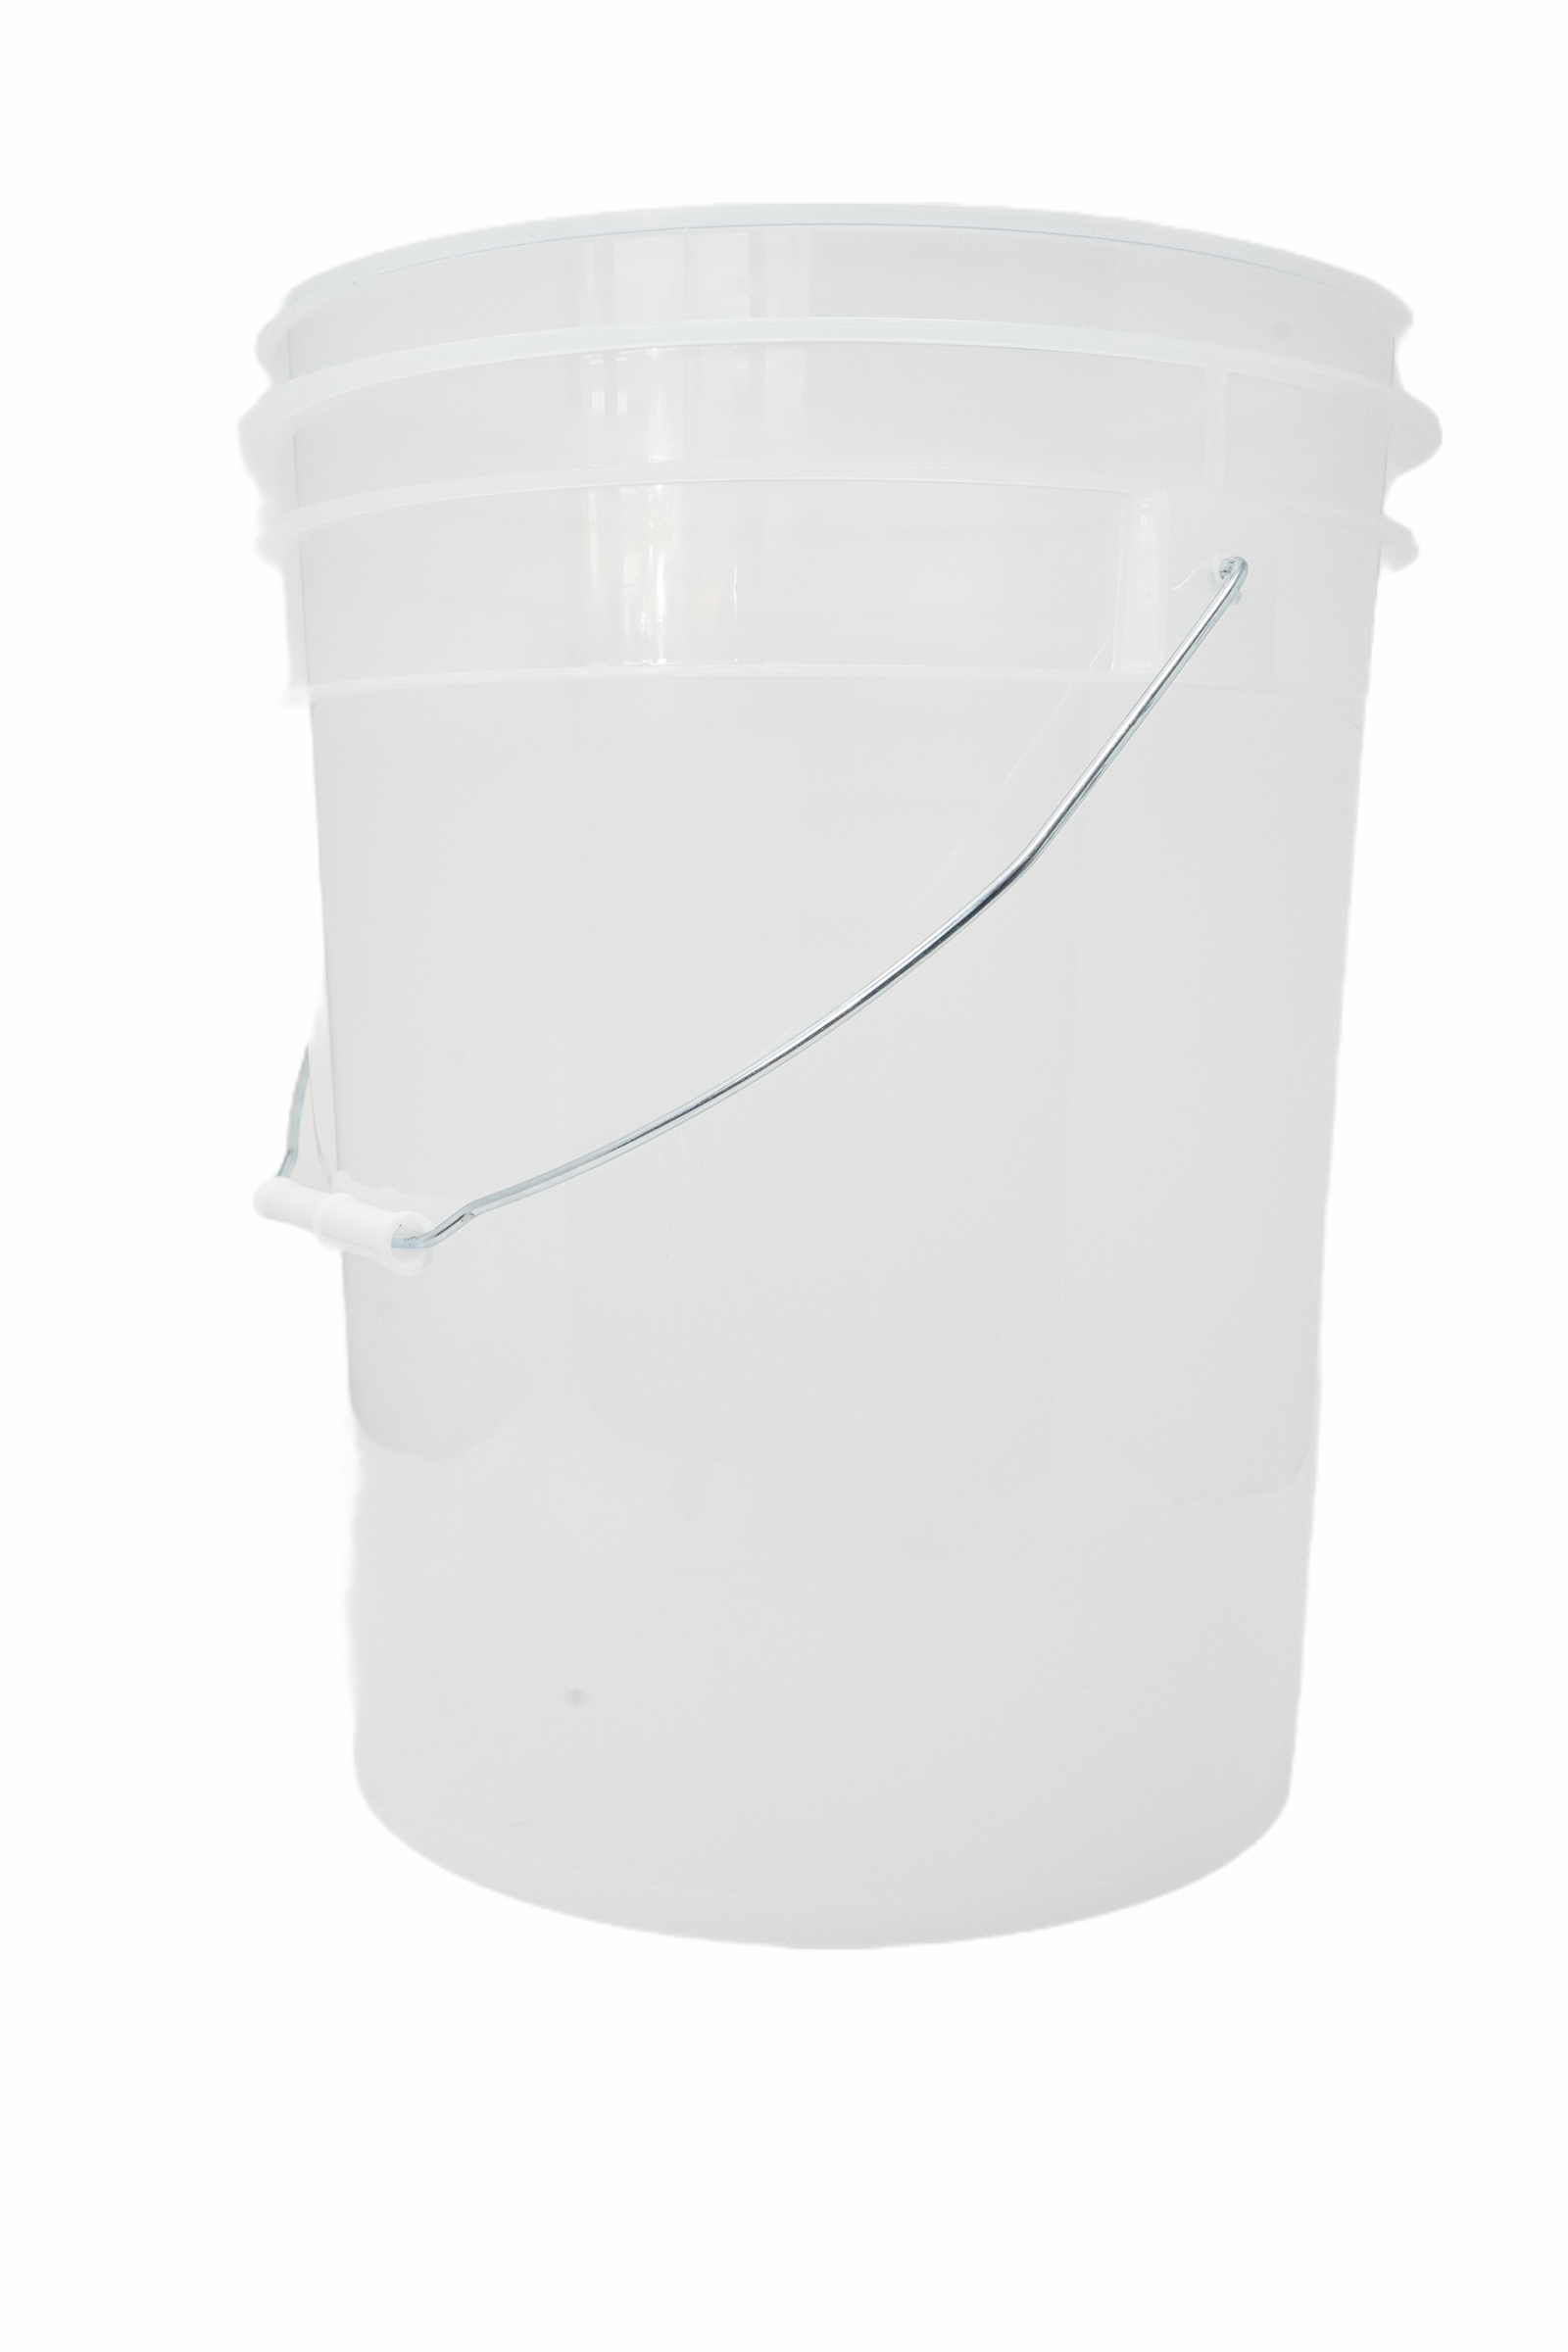 5 Gallon Wash Bucket Combo - CLEAR